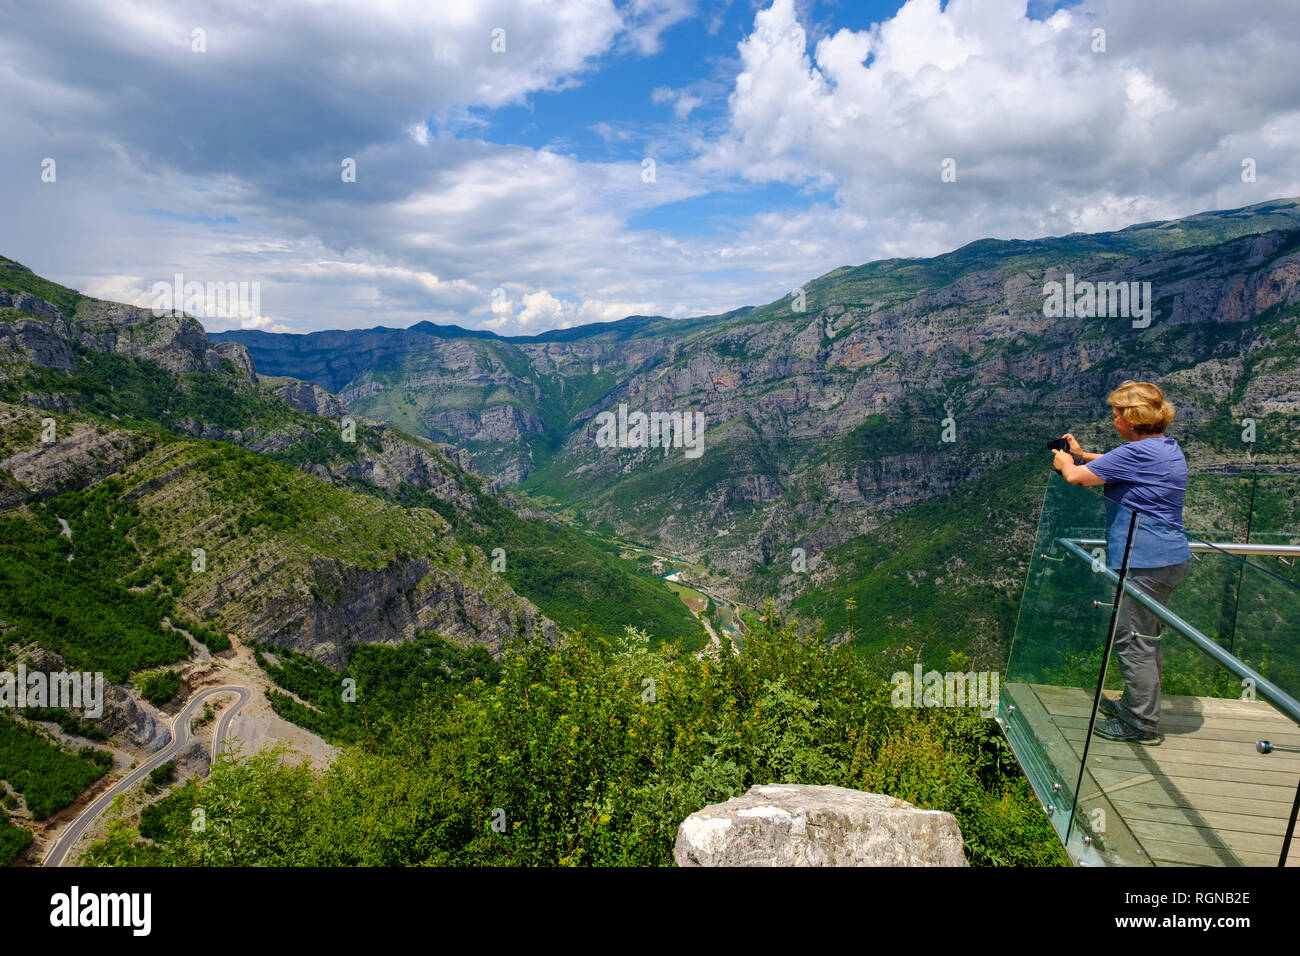 Albania, Shkoder County, albanés Alpes, Cem Canyon, punto de observación, caminante fotografiando Foto de stock